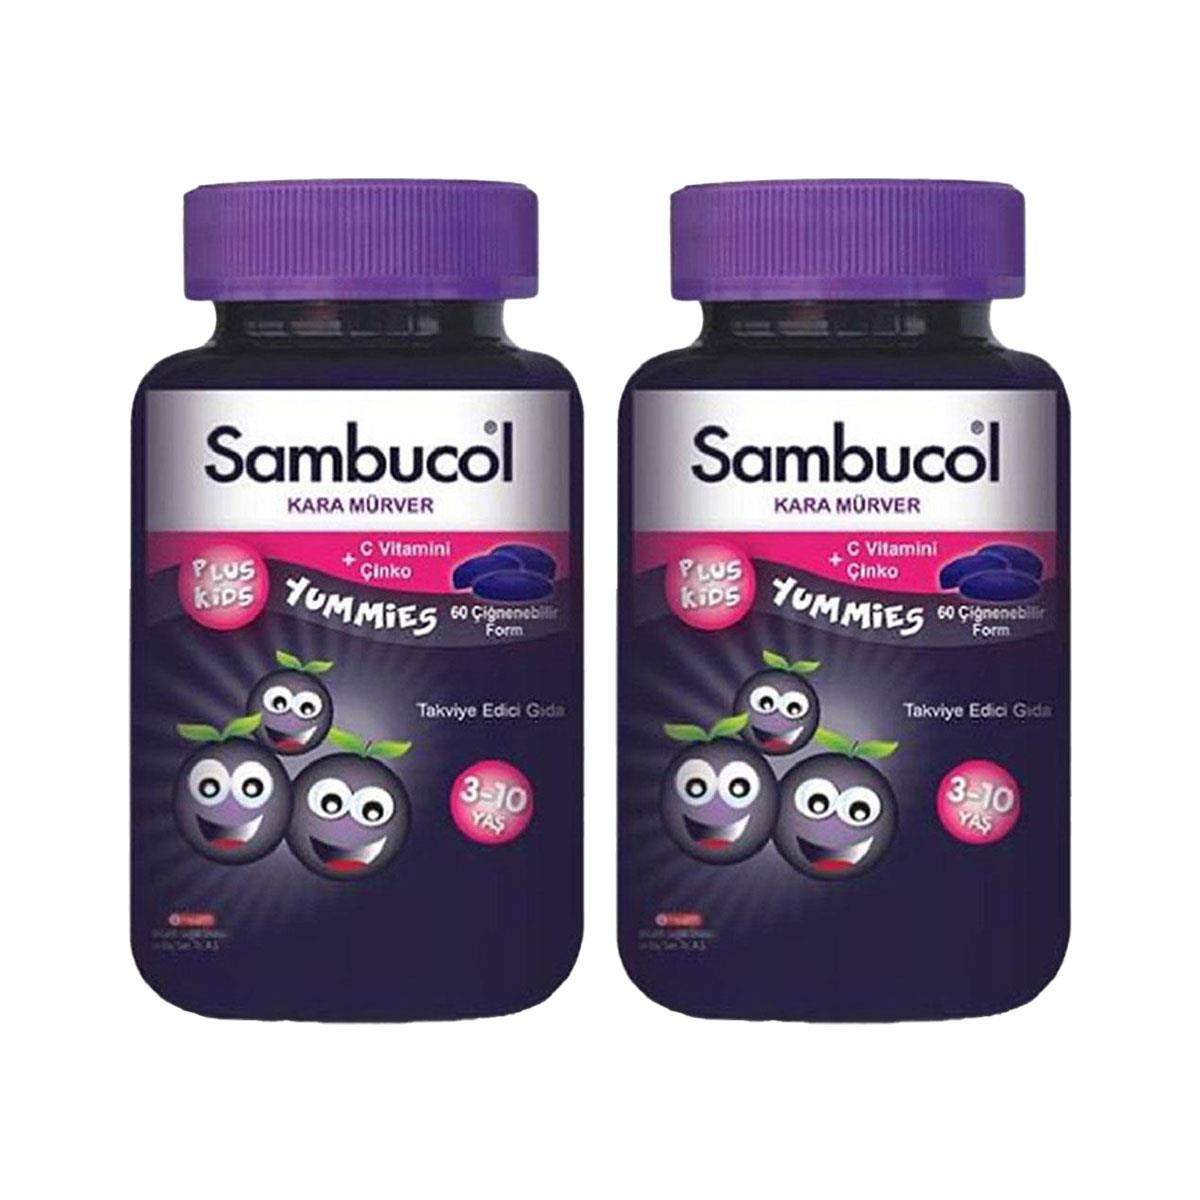 Sambucol Plus Kids Yummies Çocuklar İçin Takviye Edici Gıda 60 Tablet x 2  Adet - Daffne